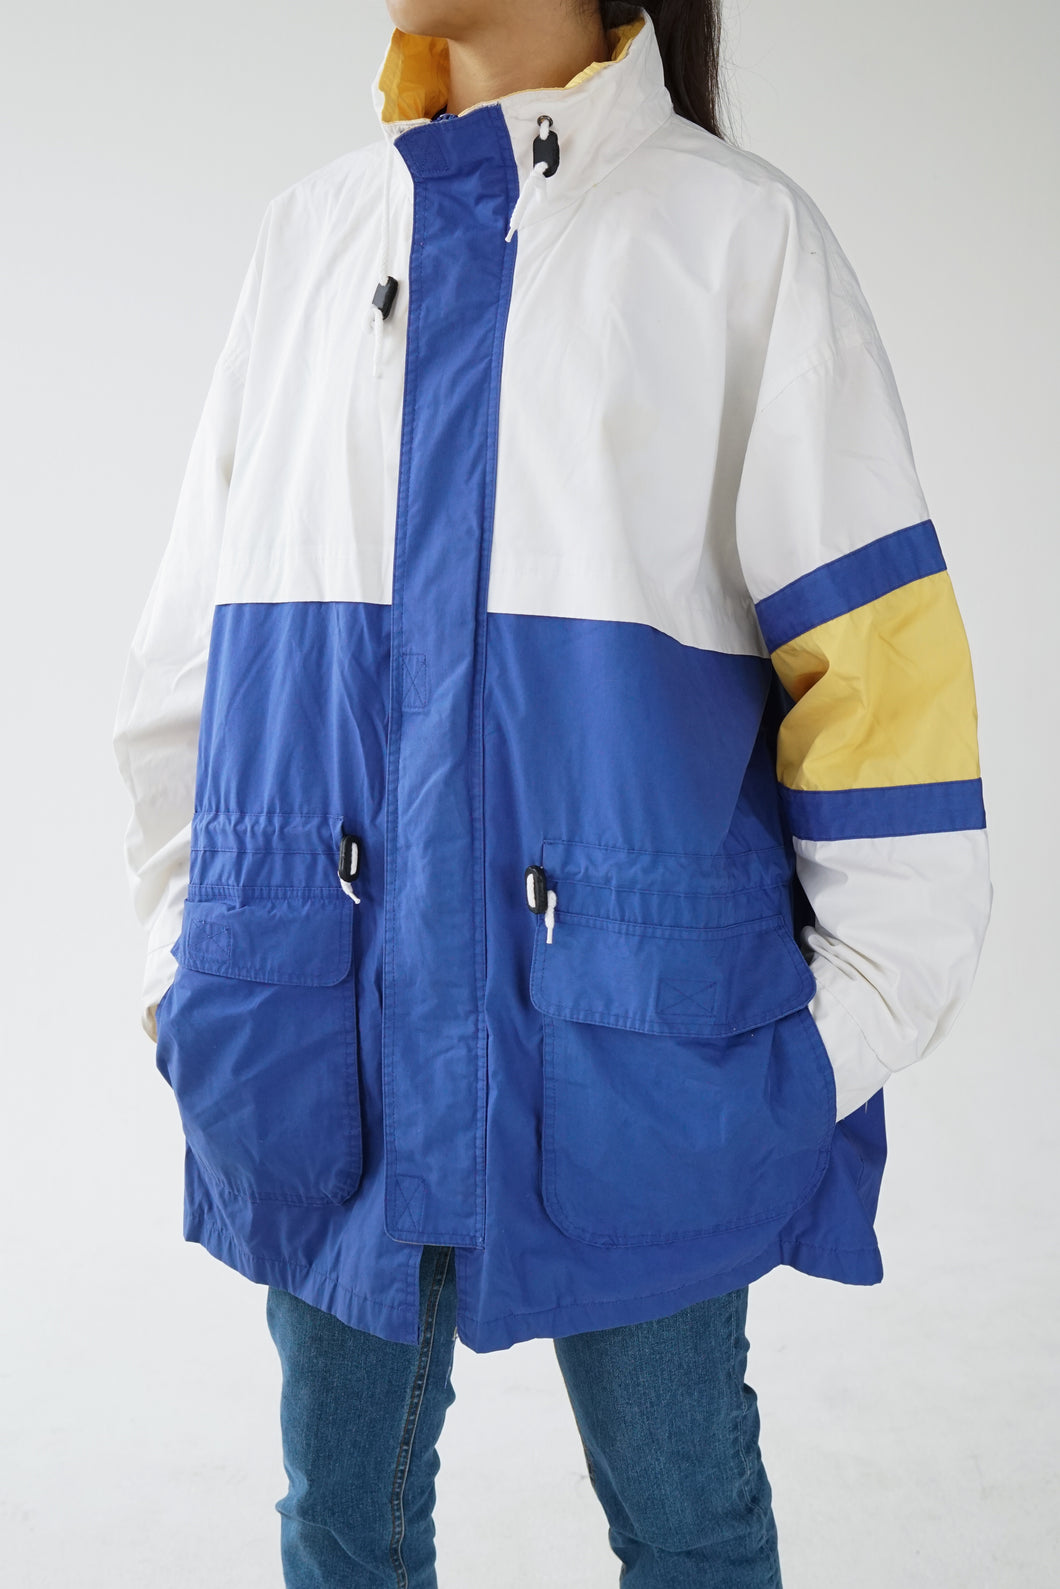 Vintage Sail jacket blanc et bleu unisex taille L